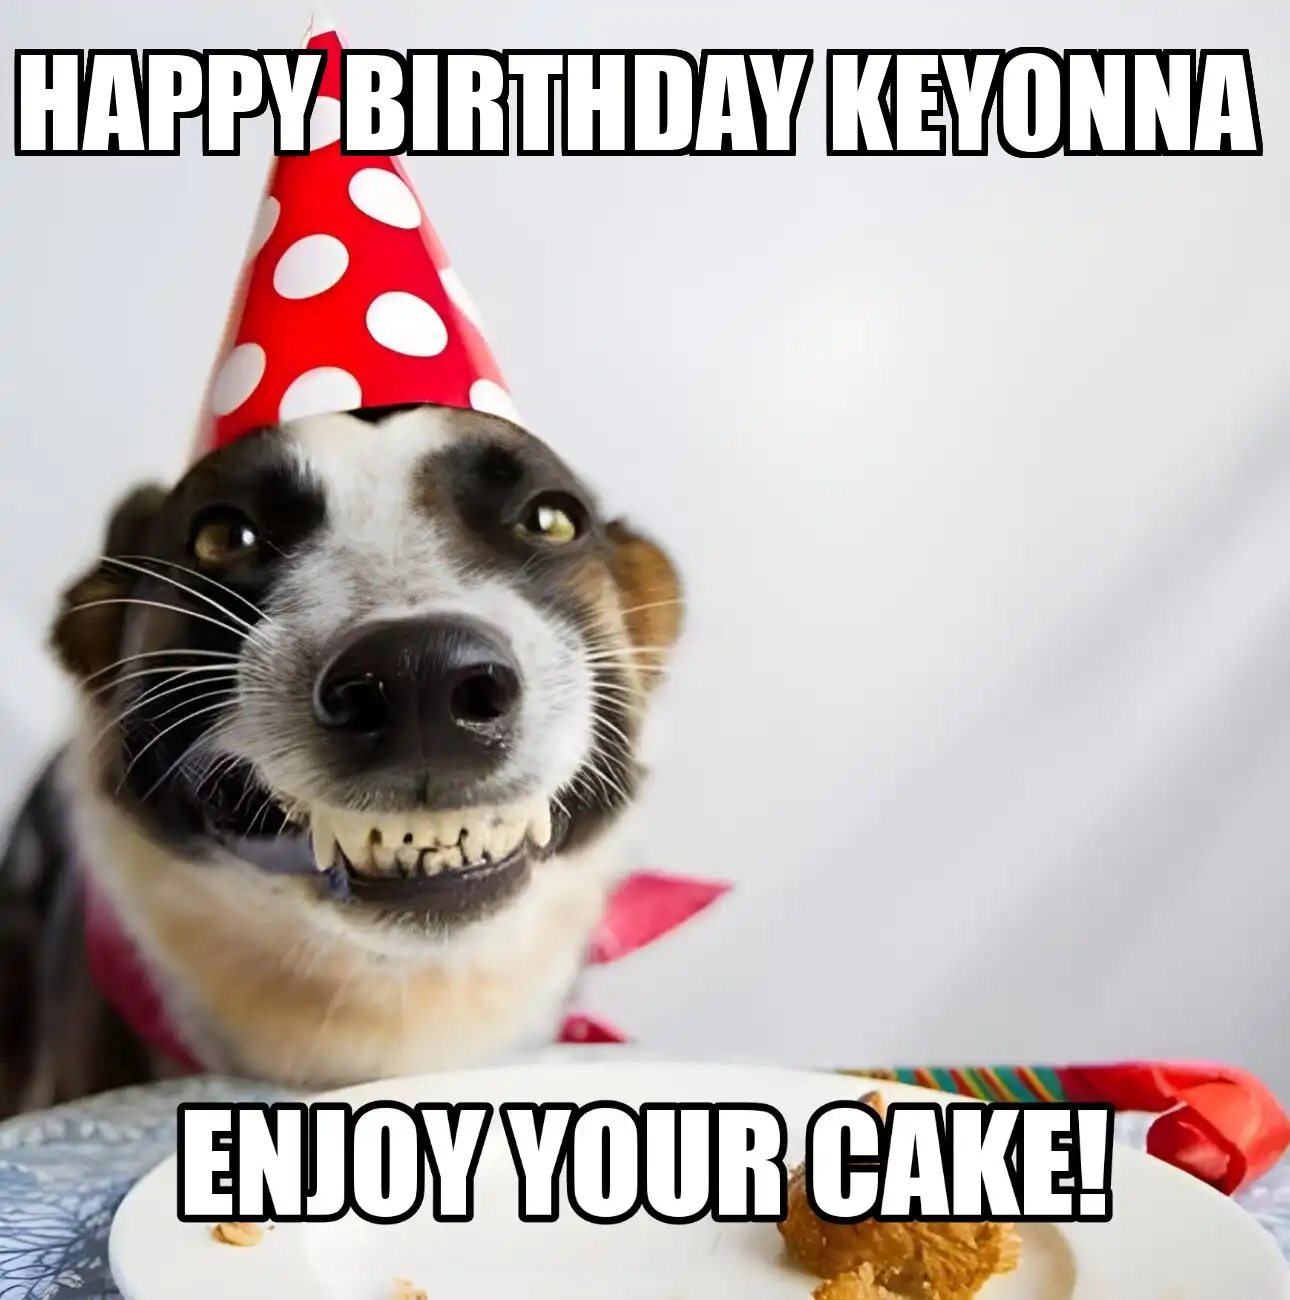 Happy Birthday Keyonna Enjoy Your Cake Dog Meme